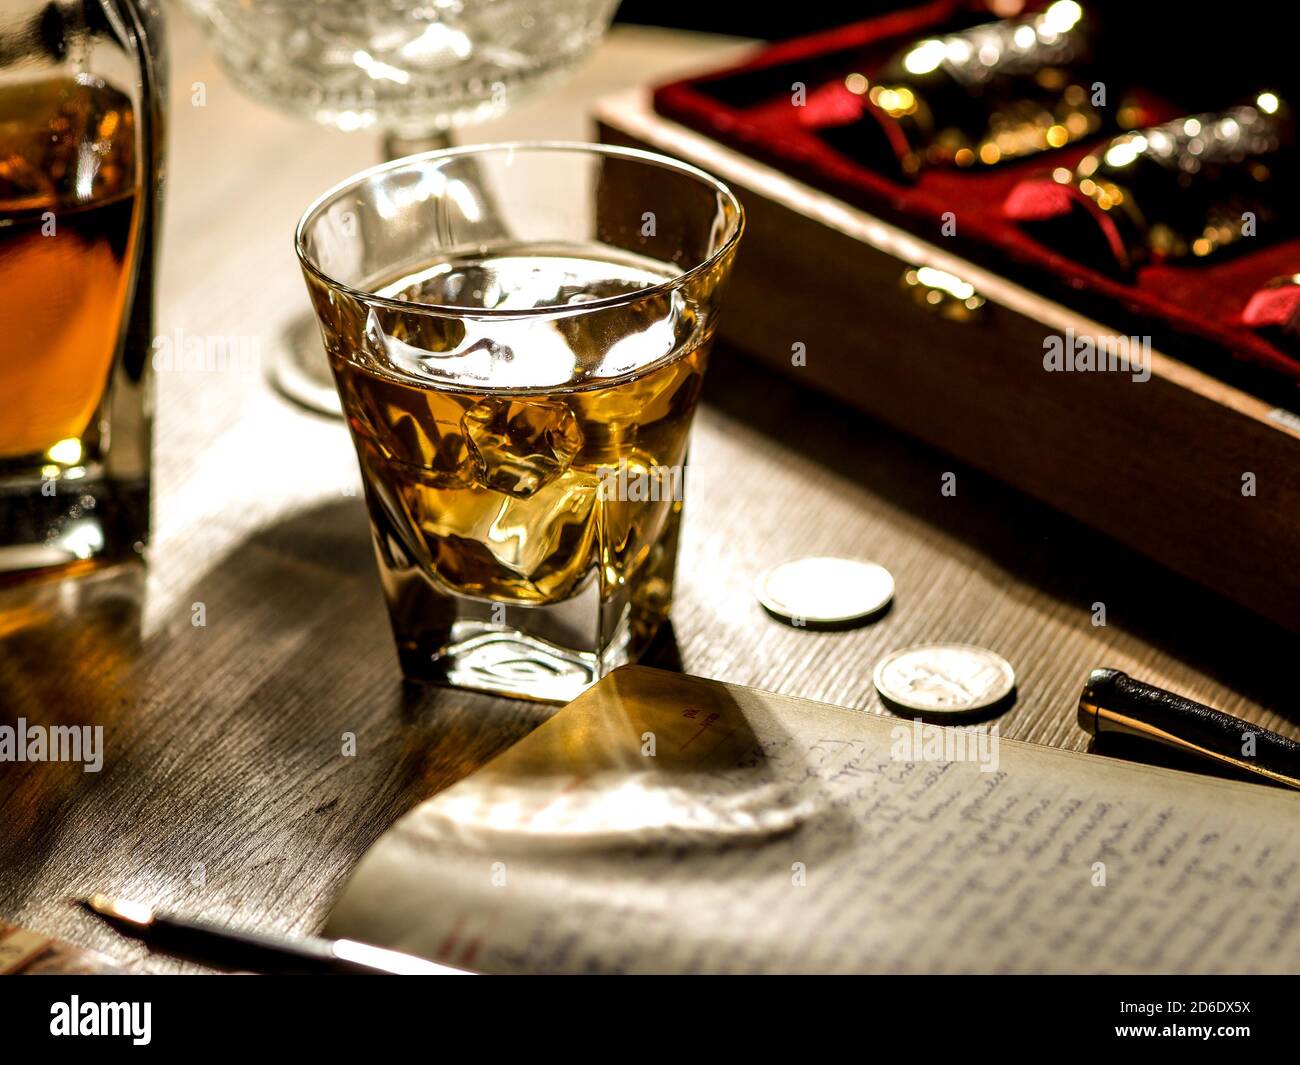 Vaso de whisky, libros y diario tarde por la noche Fotografía de stock -  Alamy